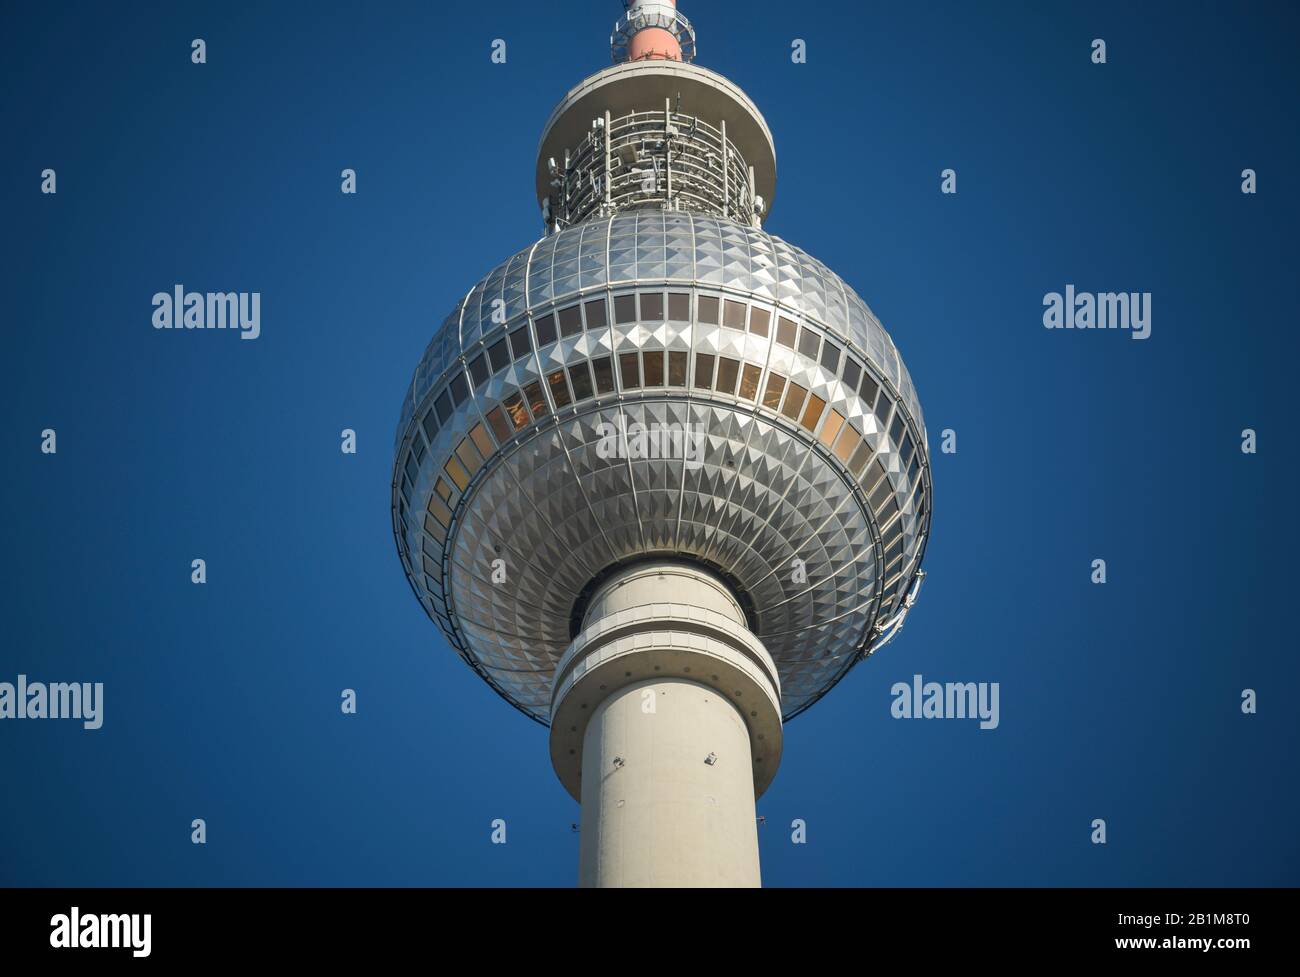 Fernsehturm, Alexanderplatz, Mitte, Berlin, Deutschland Stock Photo